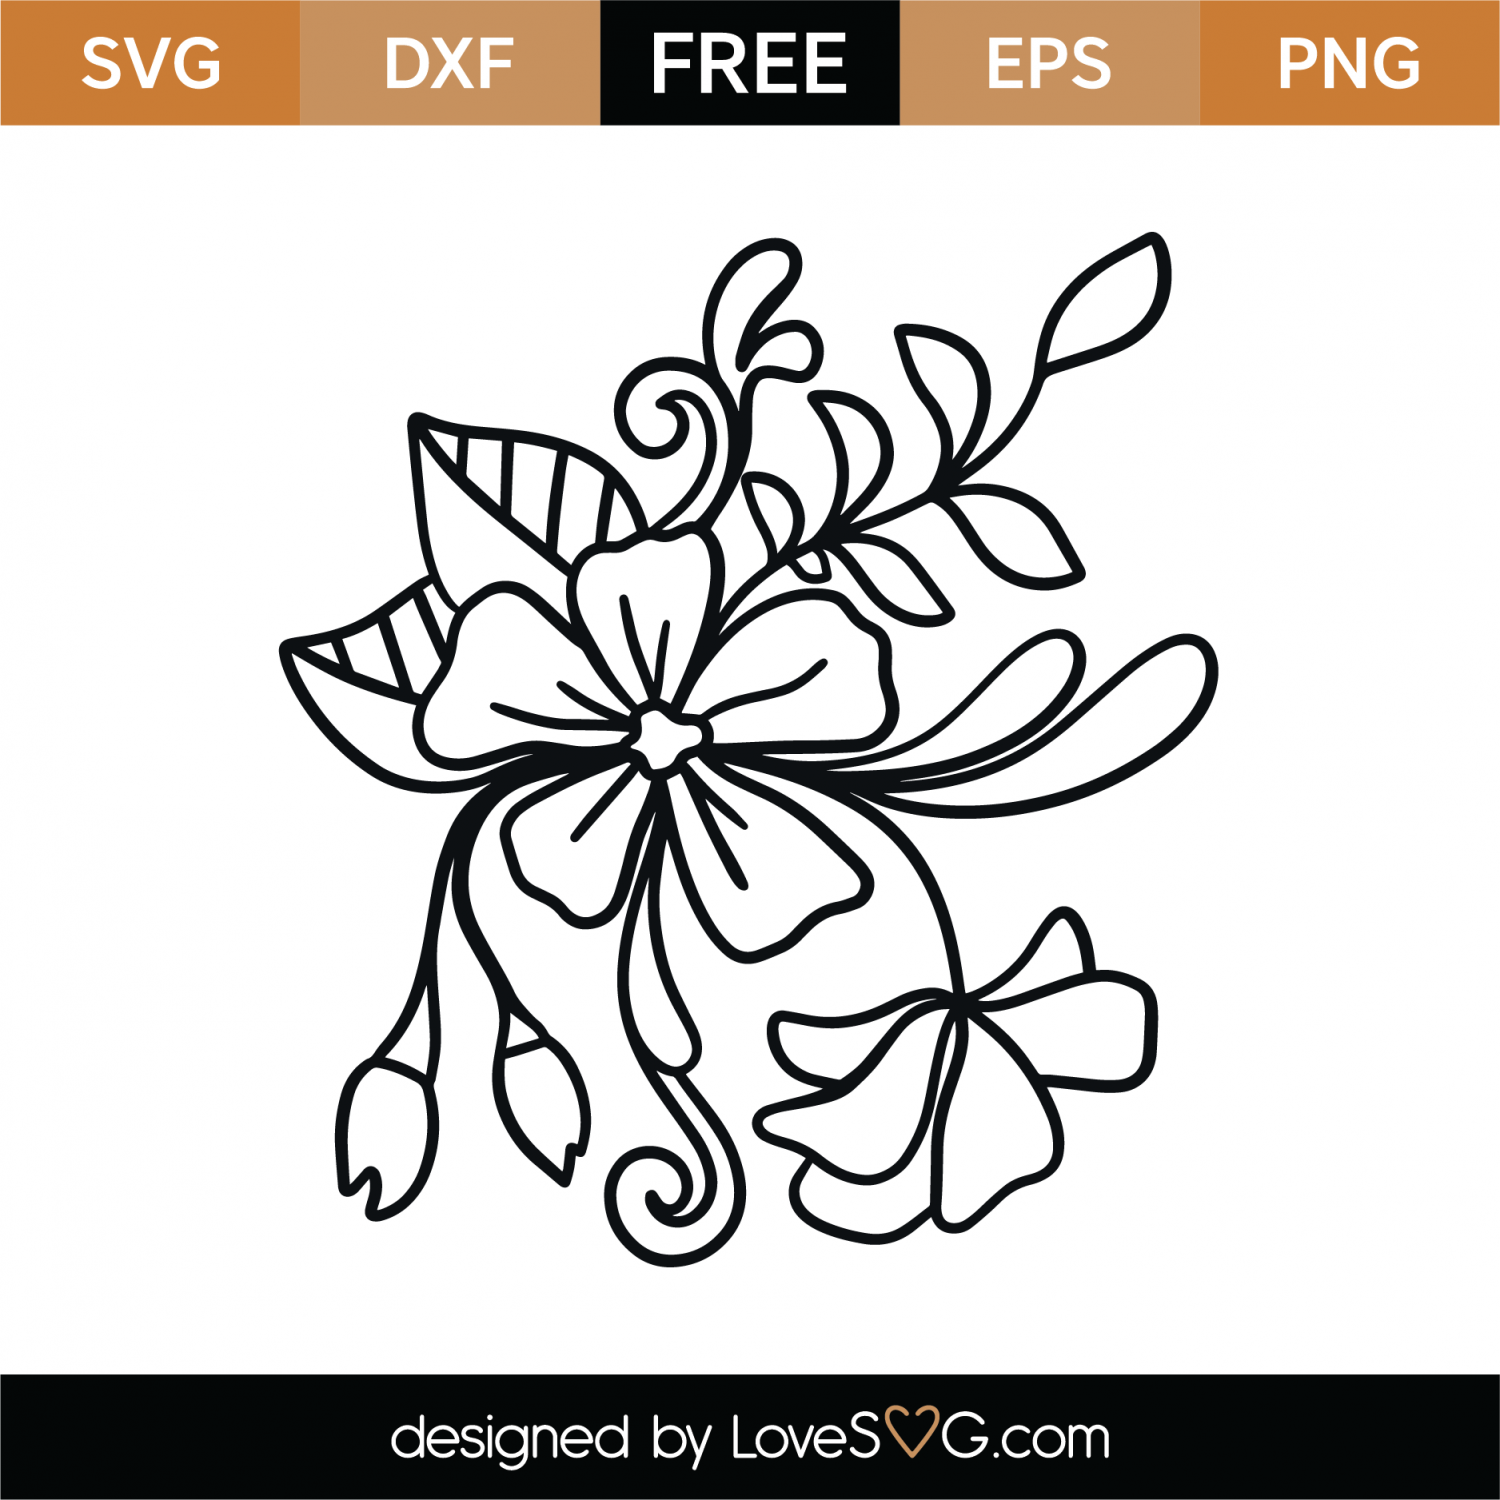 Download Free Floral Element SVG Cut File | Lovesvg.com